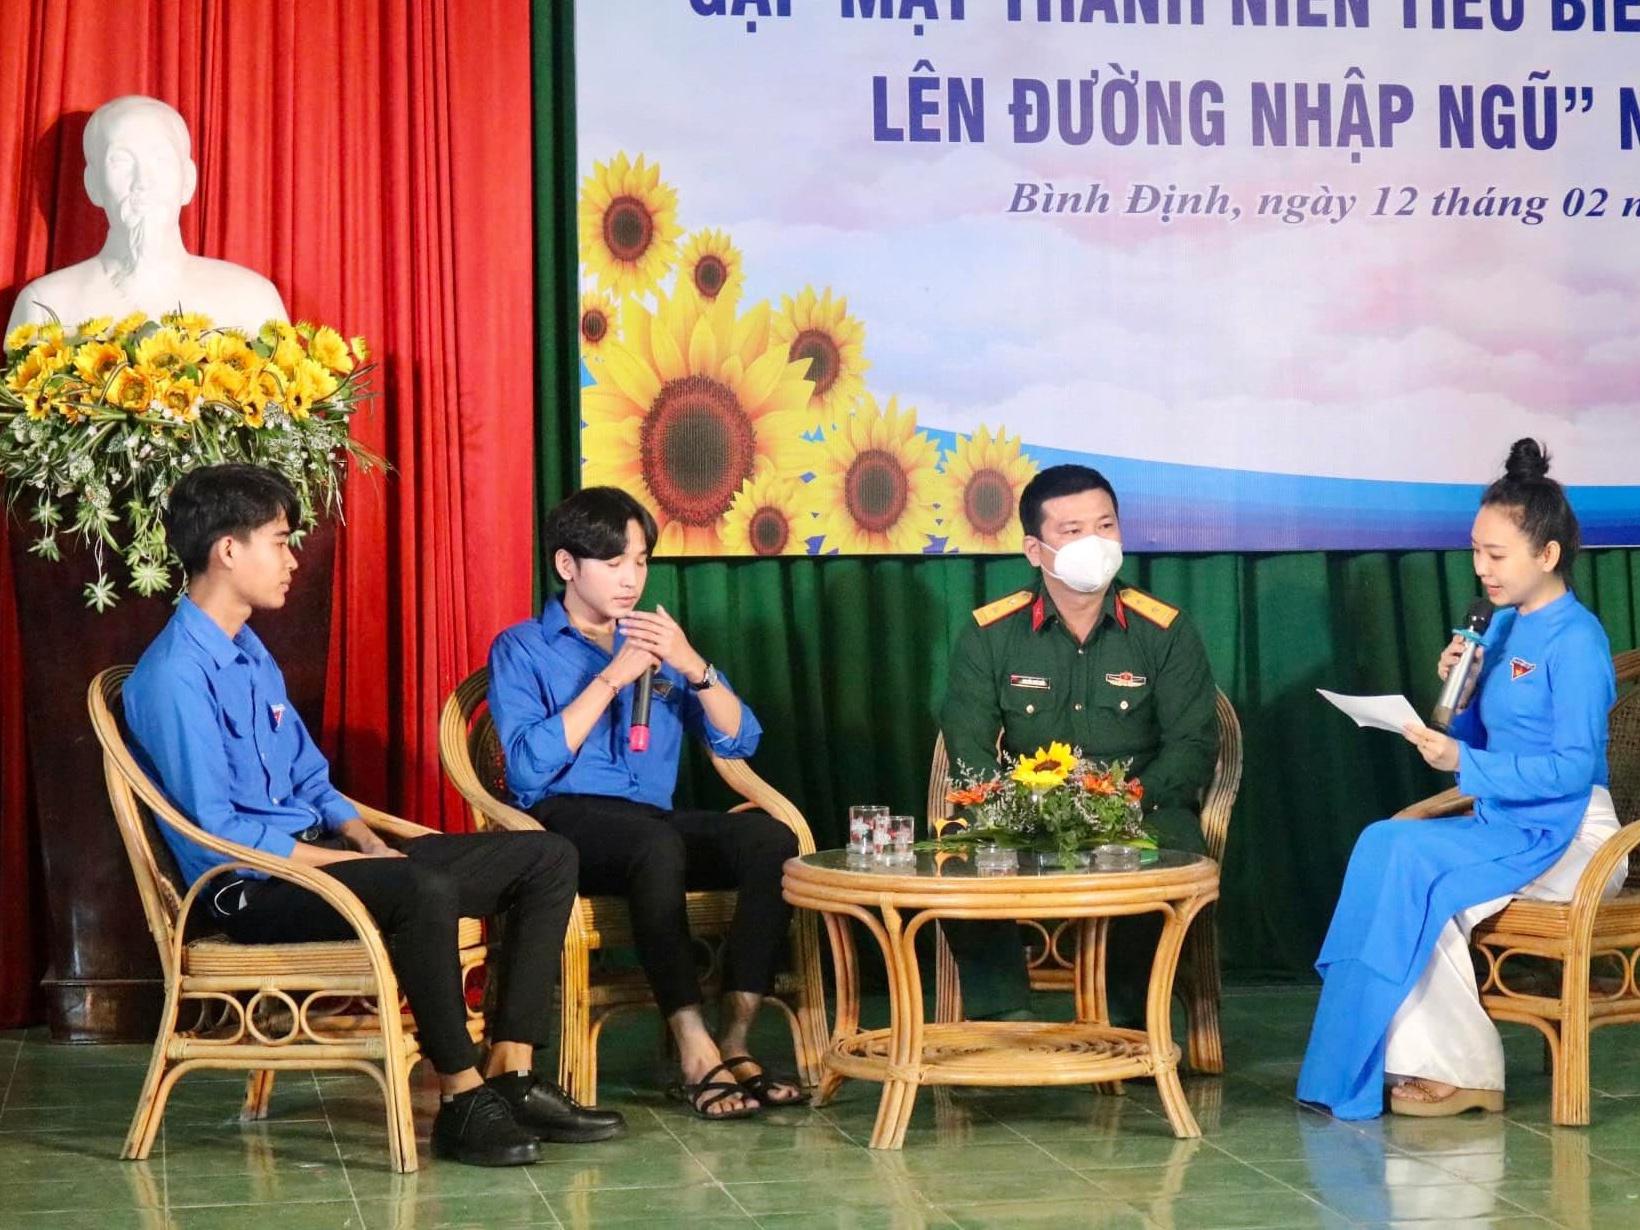 Tỉnh đoàn Bình Định tổ chức tọa đàm gặp mặt thanh niên tình nguyện nhập ngũ - ảnh 1